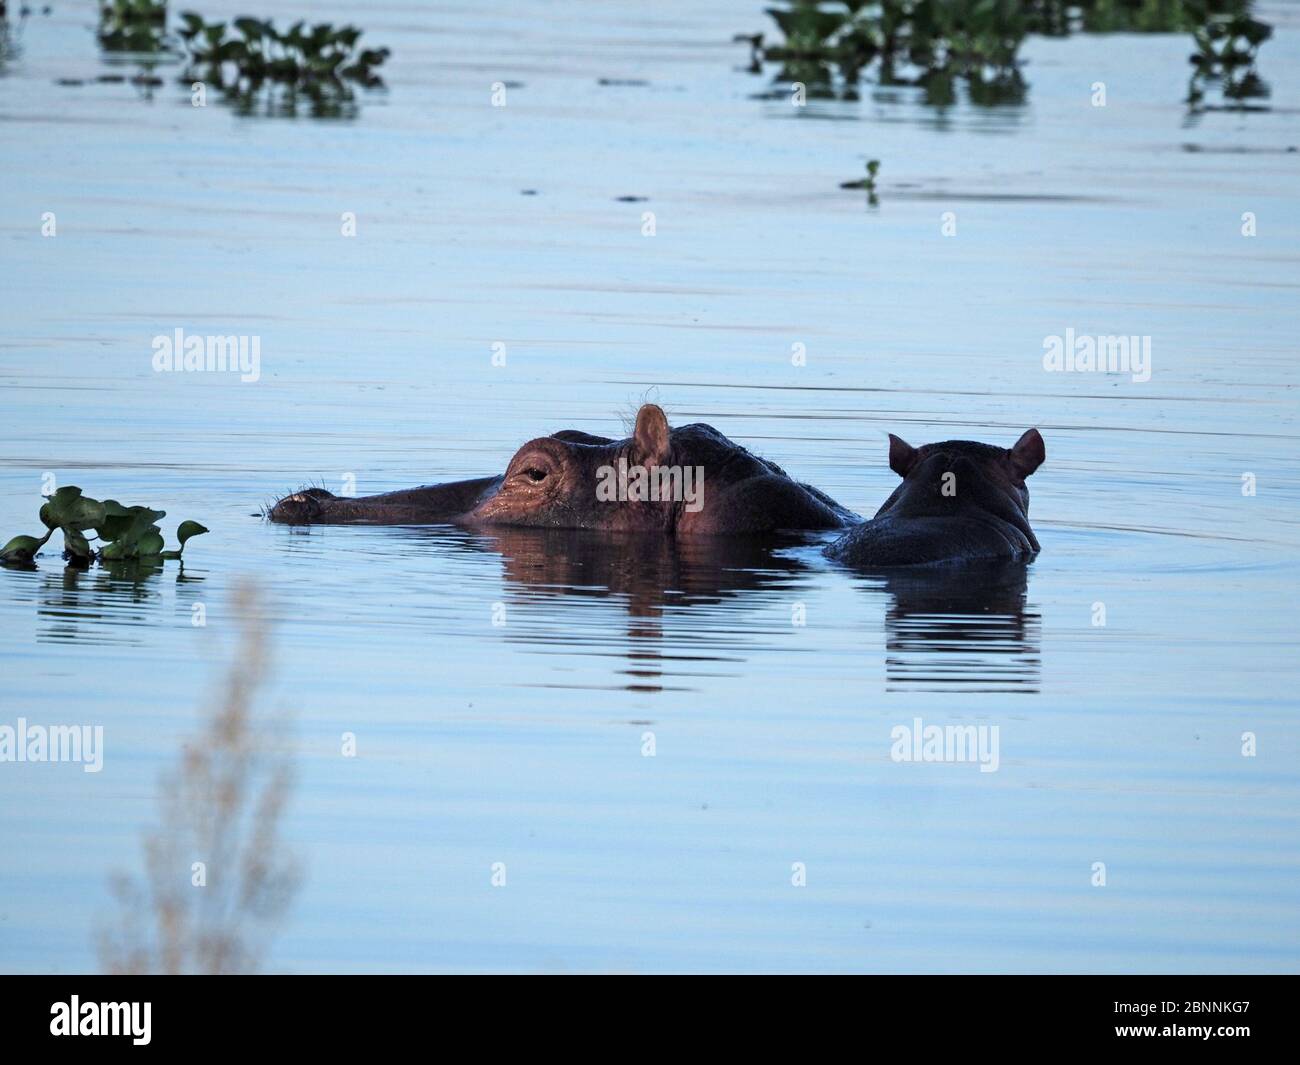 Mère commune hippopotame (Hippopotamus amphibius) avec son bébé mignon sur son dos dans les eaux tropicales du lac Naivasha, vallée du Rift Kenya, Afrique Banque D'Images